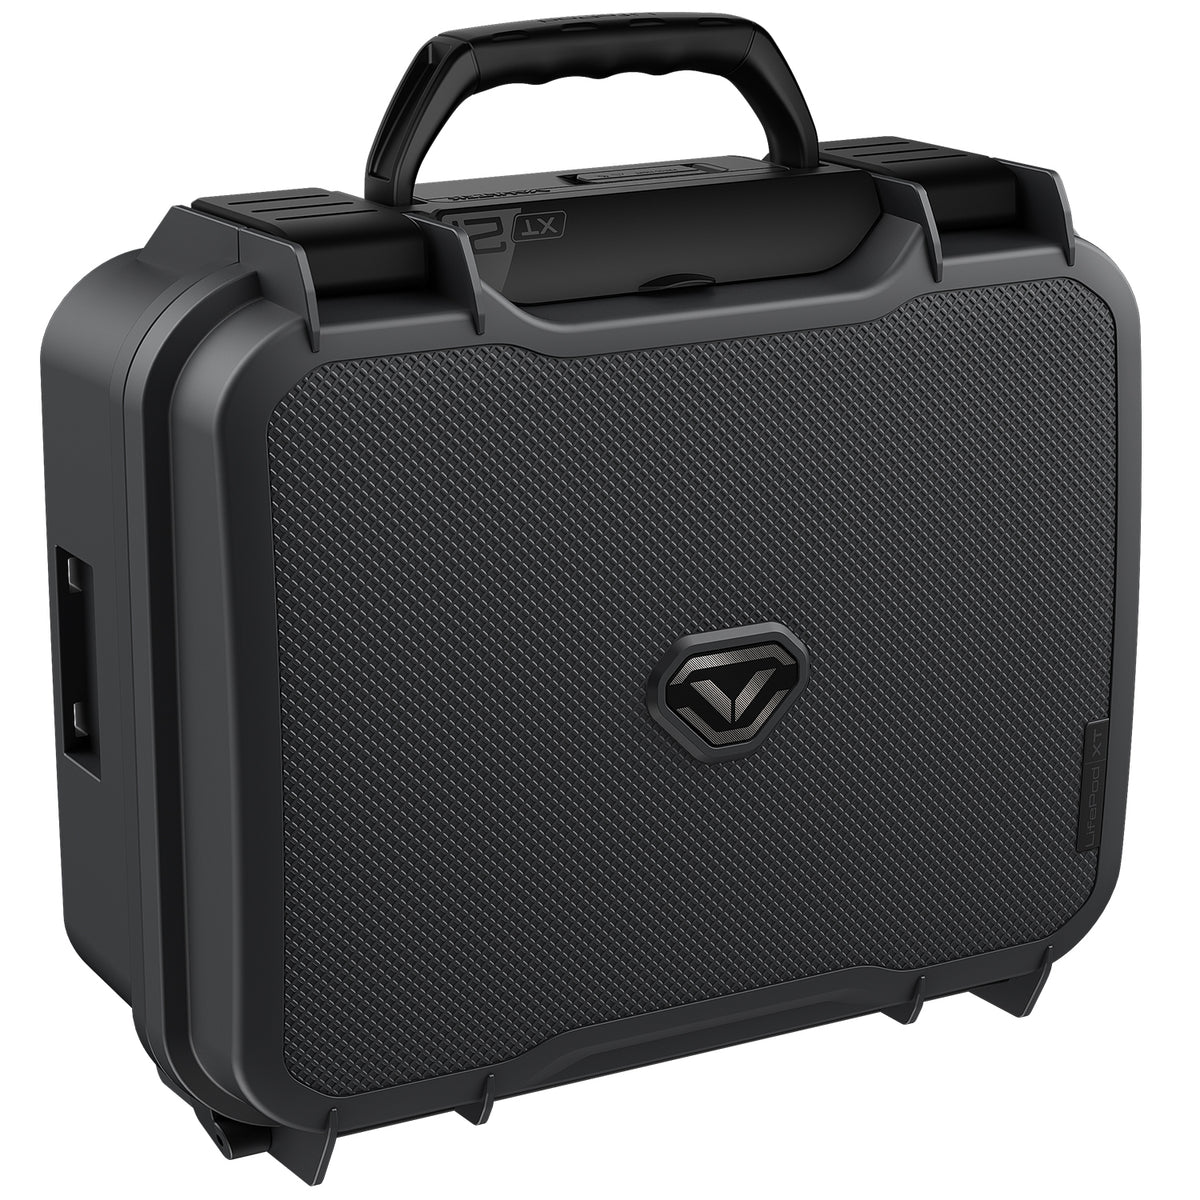 Vaultek Lifepod XT2i High Capacity Weather Resistant Firearm Case Enthusiast Model Titanium Gray